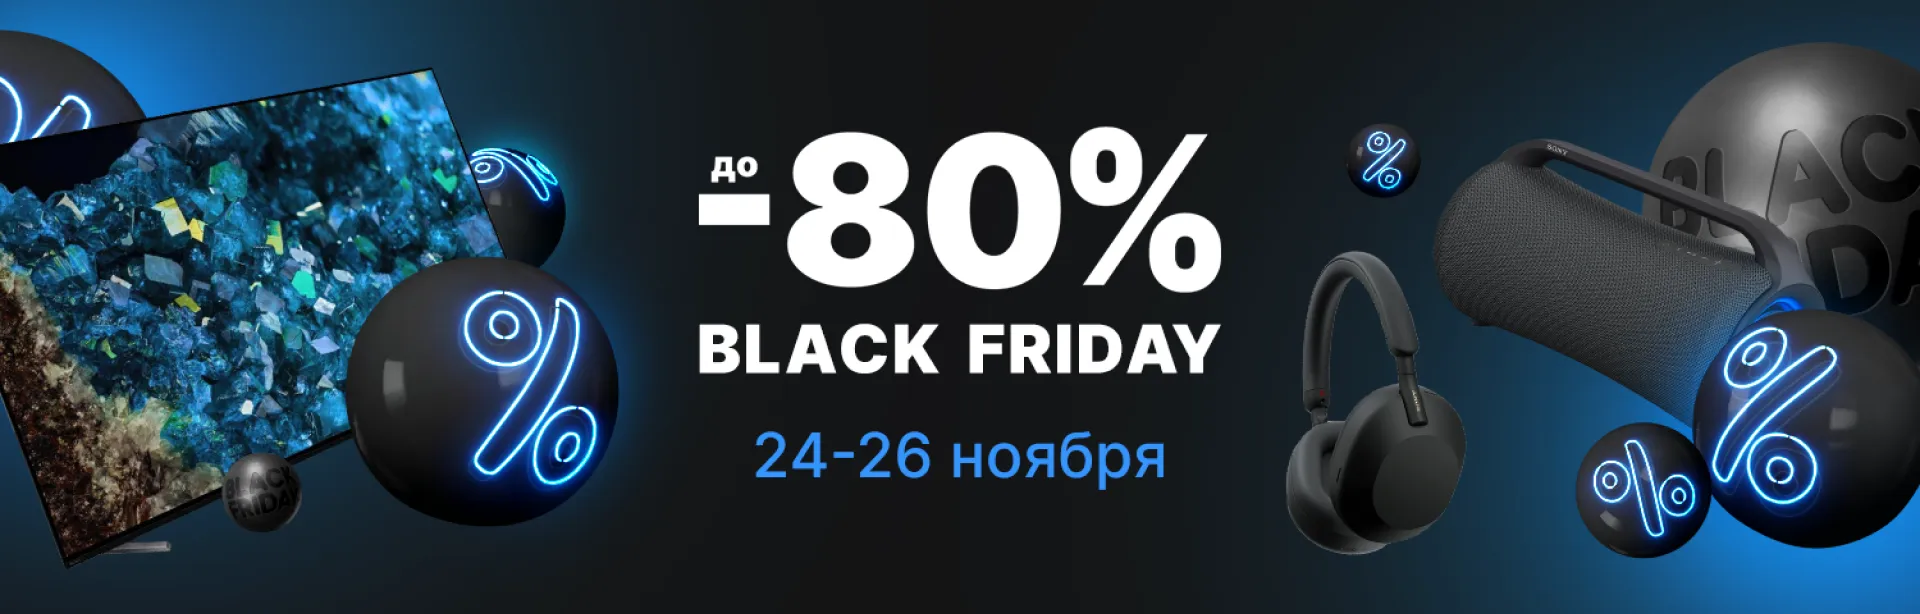 Black Friday Скидки до -80%